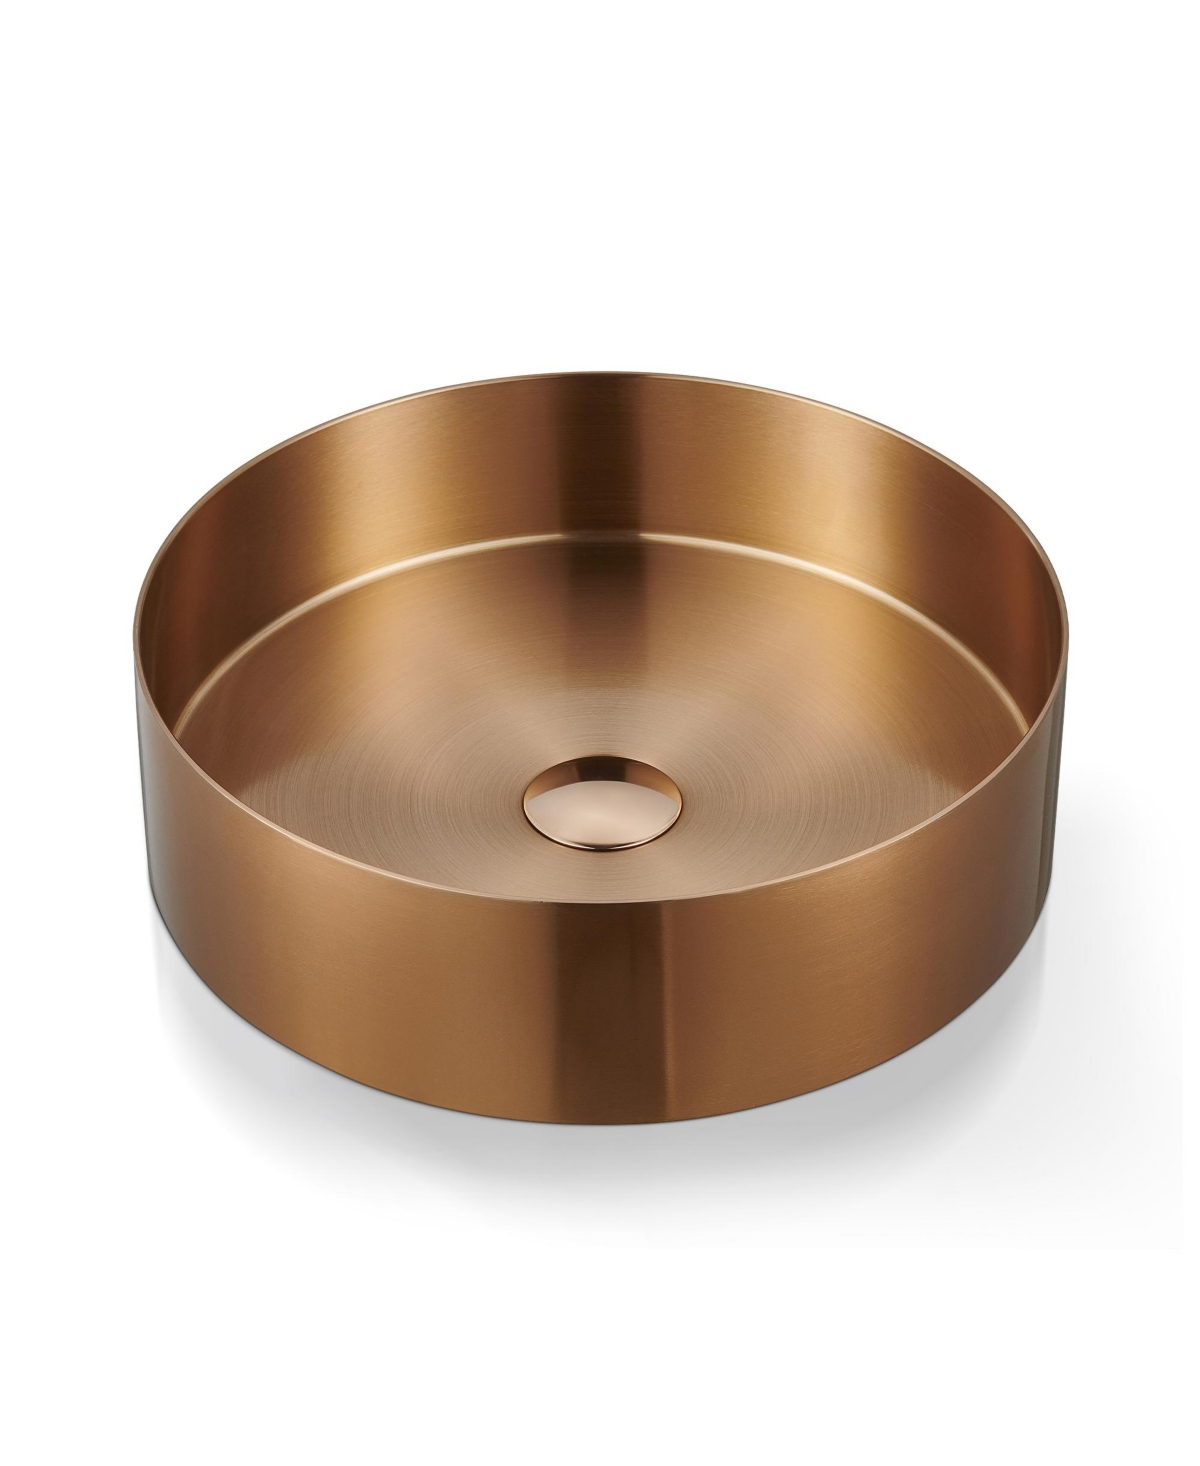 14.9'' Stainless Steel Circular Vessel Bathroom Sink - Rose Gold